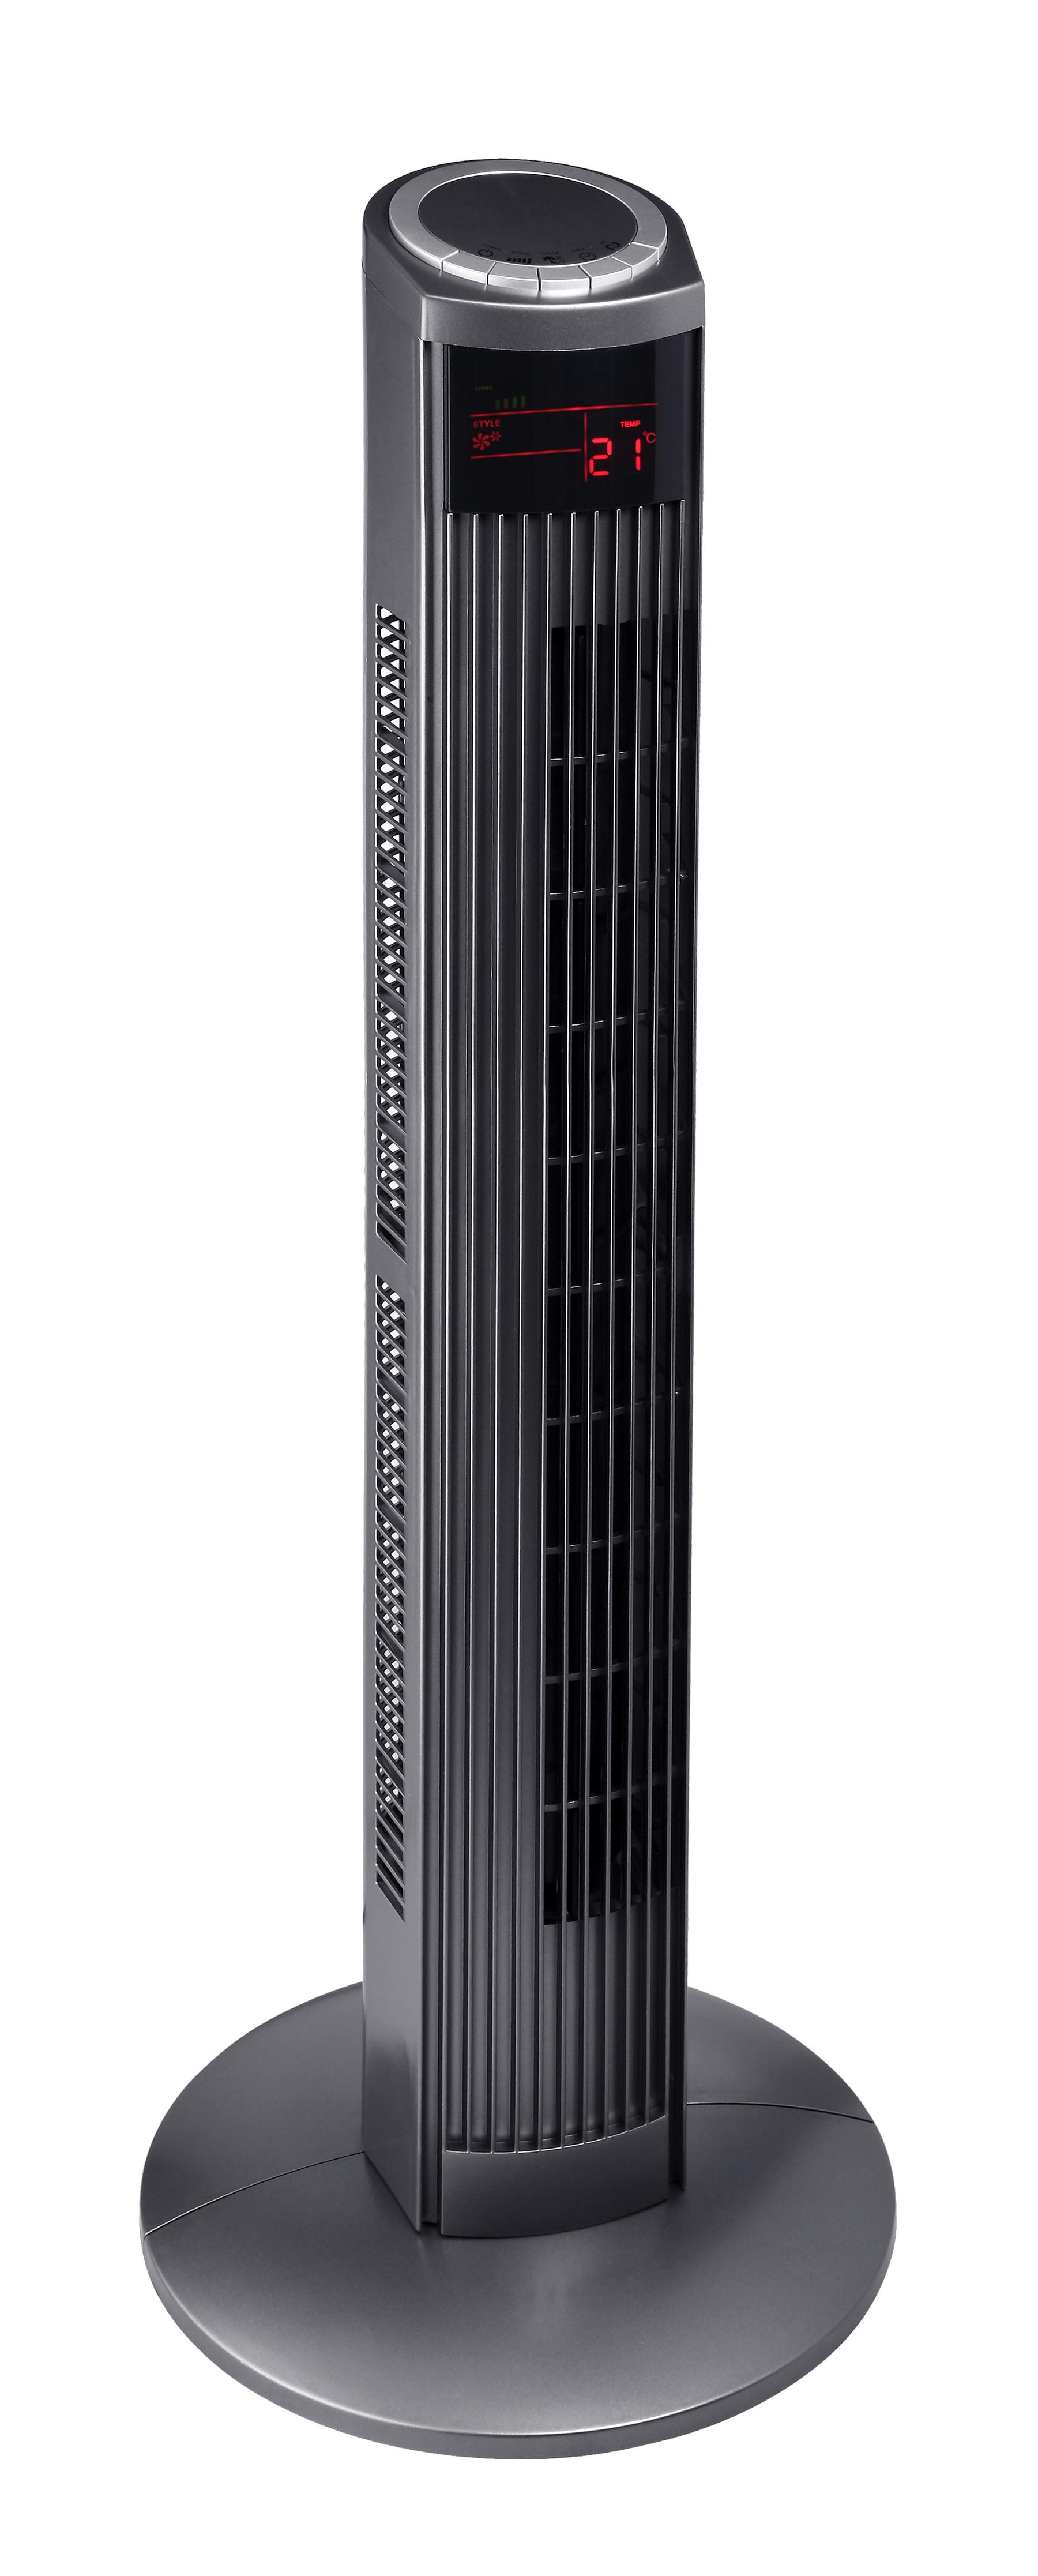 36 inch Turbo Tower Fan，European style tower fan，Remote control tower fan